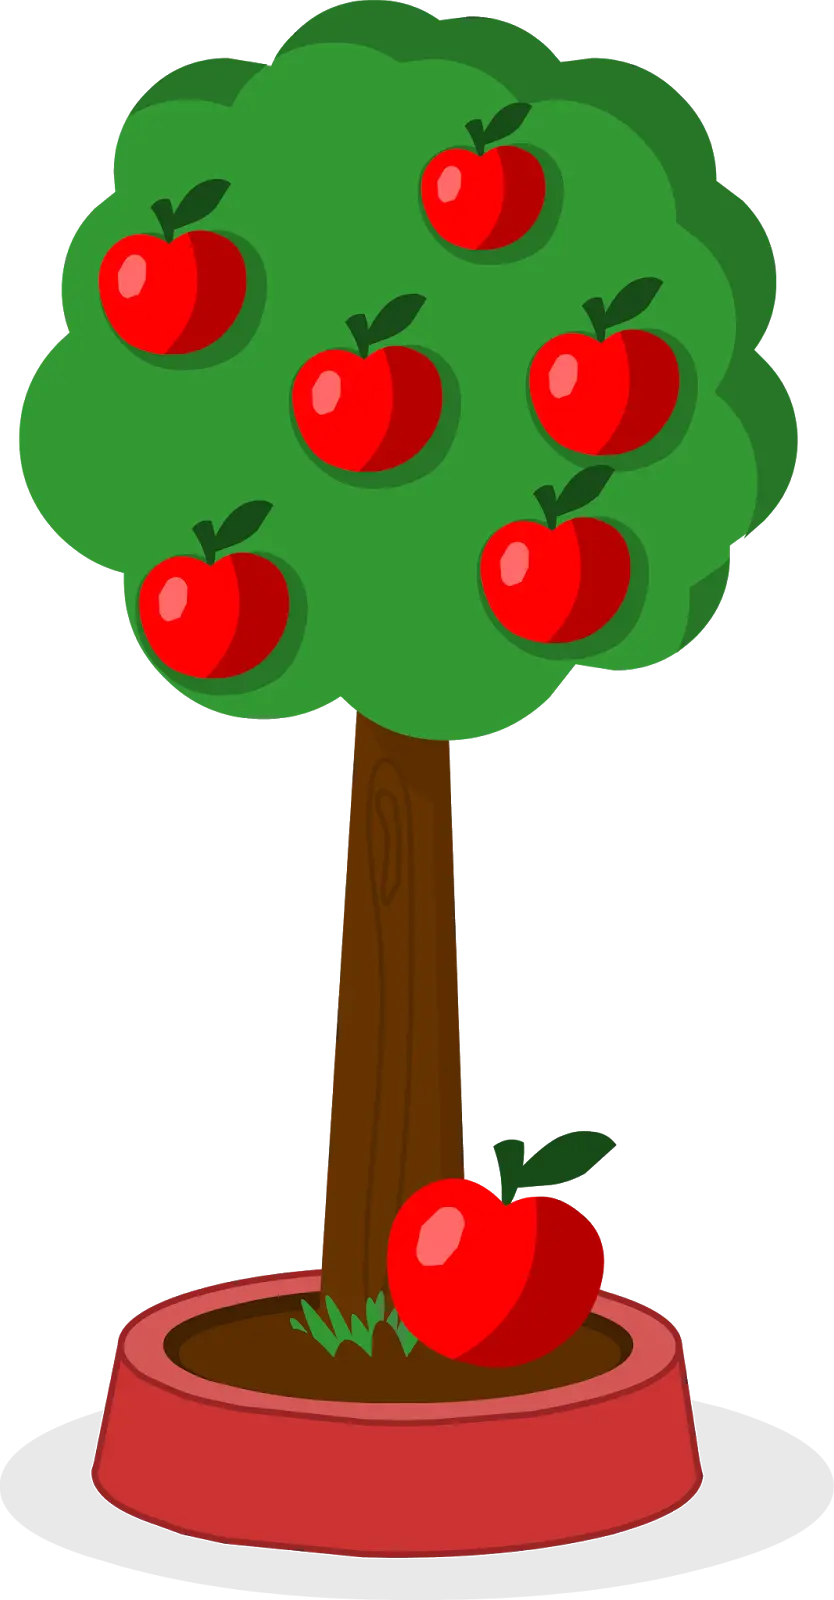 تصویر کیوت و باحال درخت سیب گرافیکی کامپیوتری با فرمت PNG پی ان جی و دوربری شده